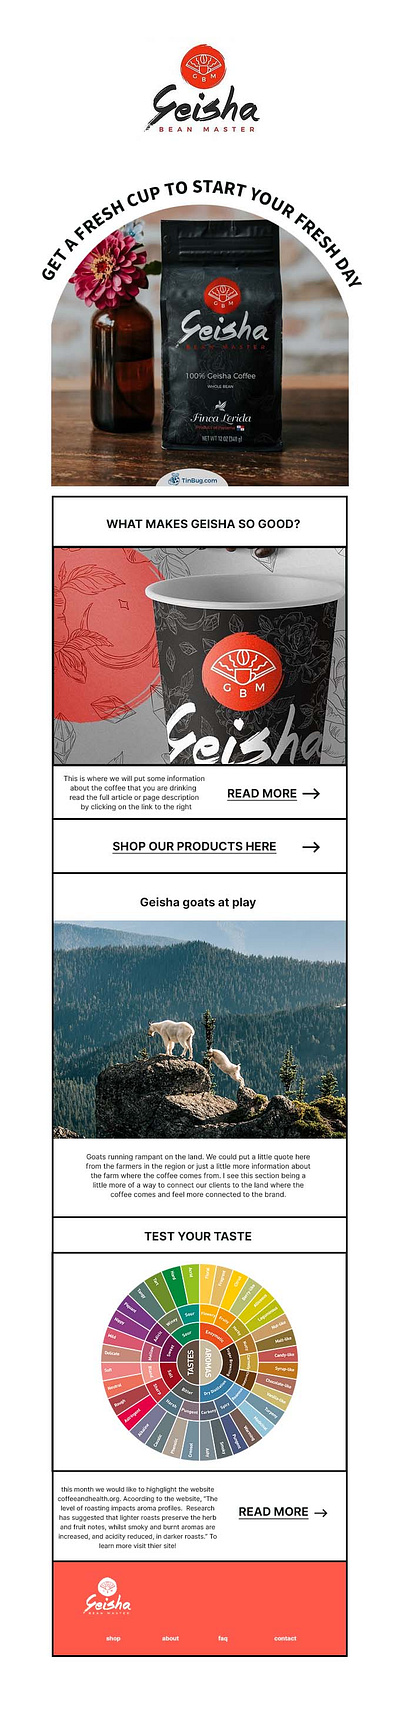 Newsletter Design Geisha Coffee newsletter newsletter design